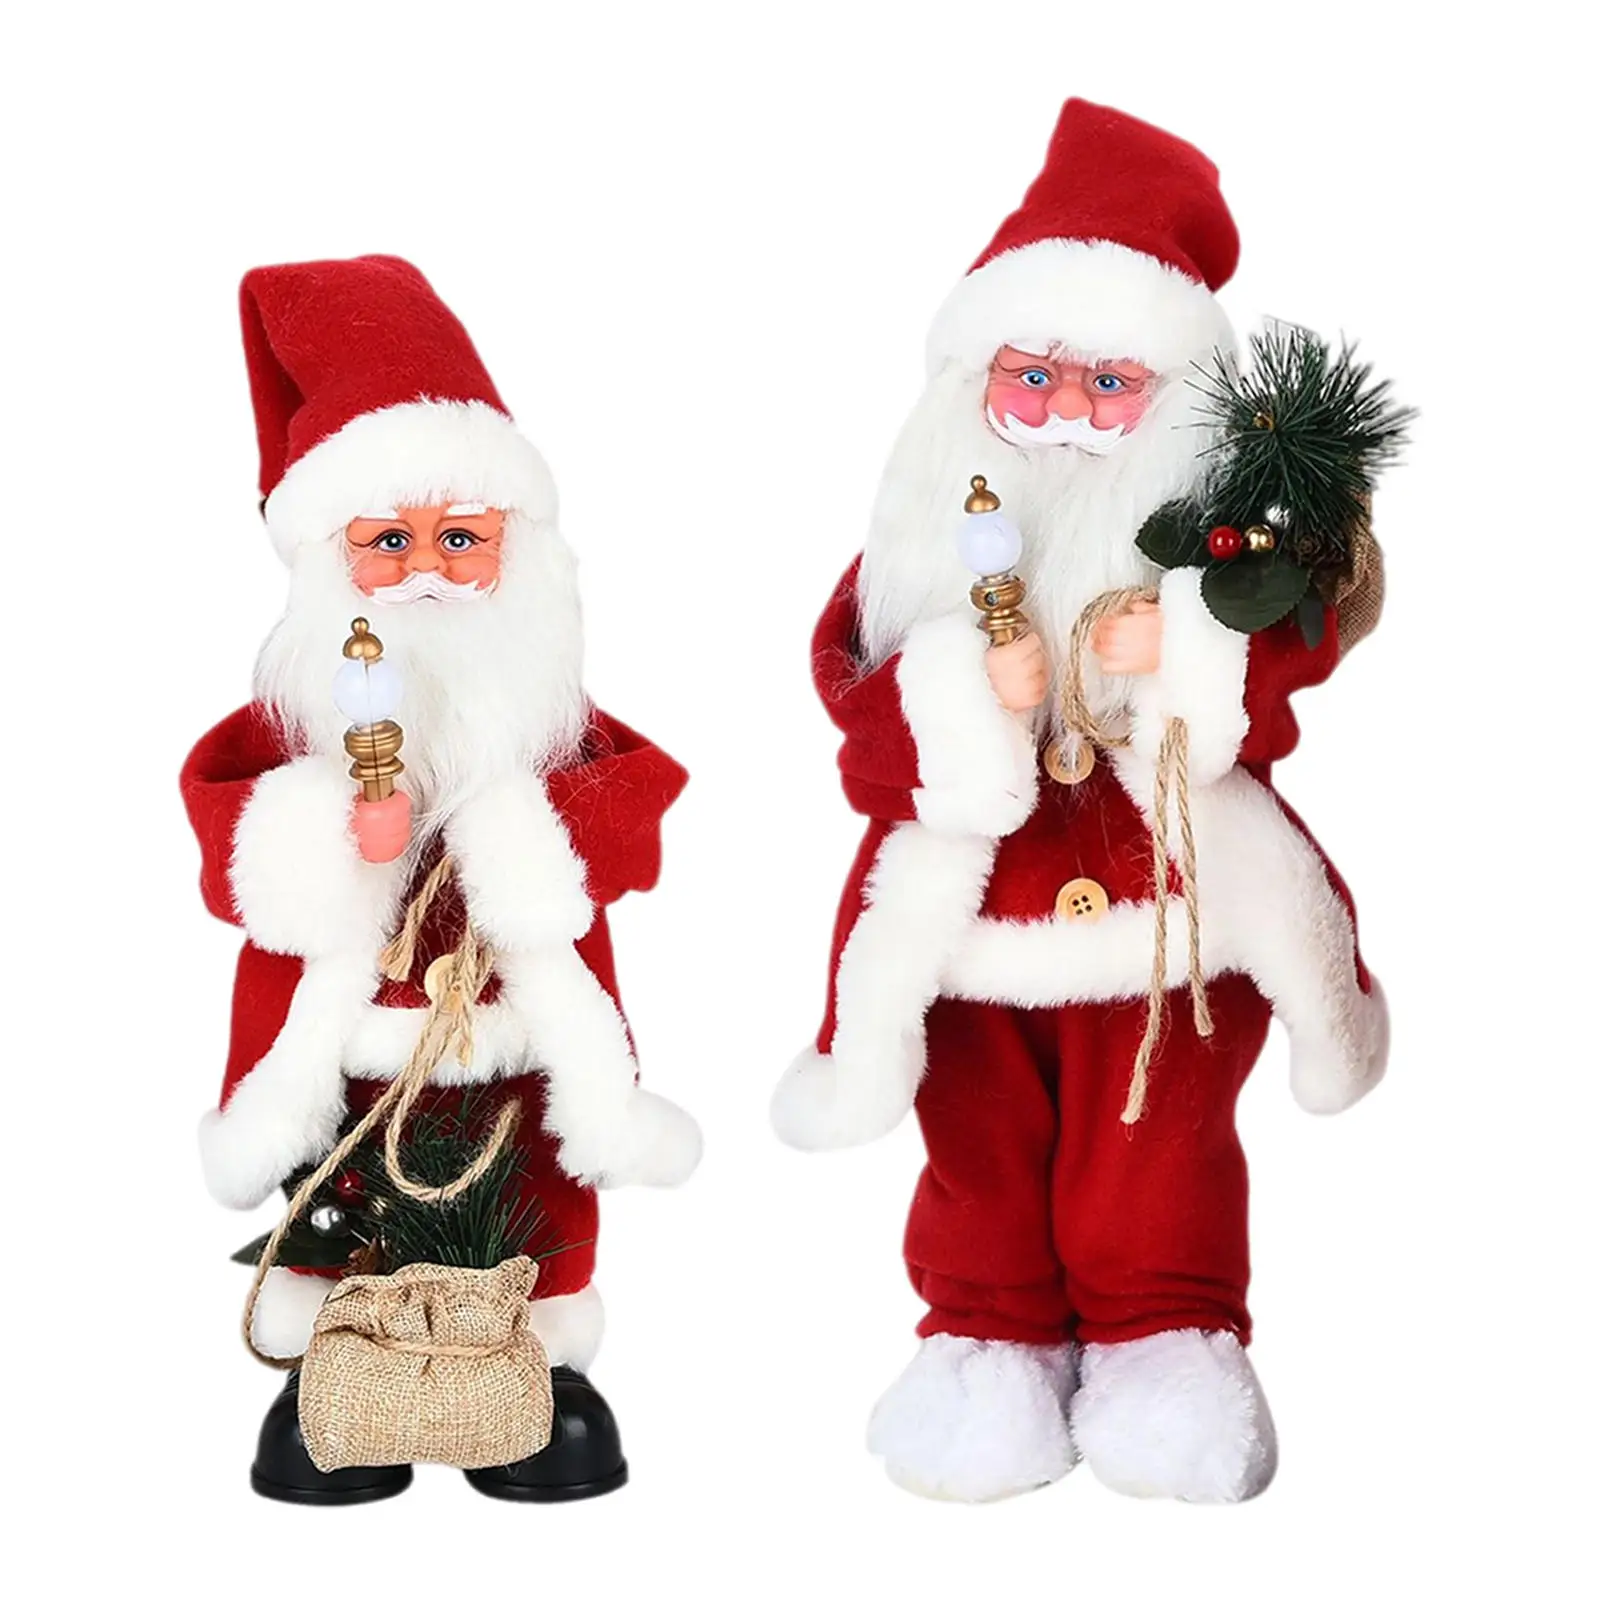 Electric Santa Claus Toy Wiggle Santa Swinging Singing Twerking Santa Claus for Children